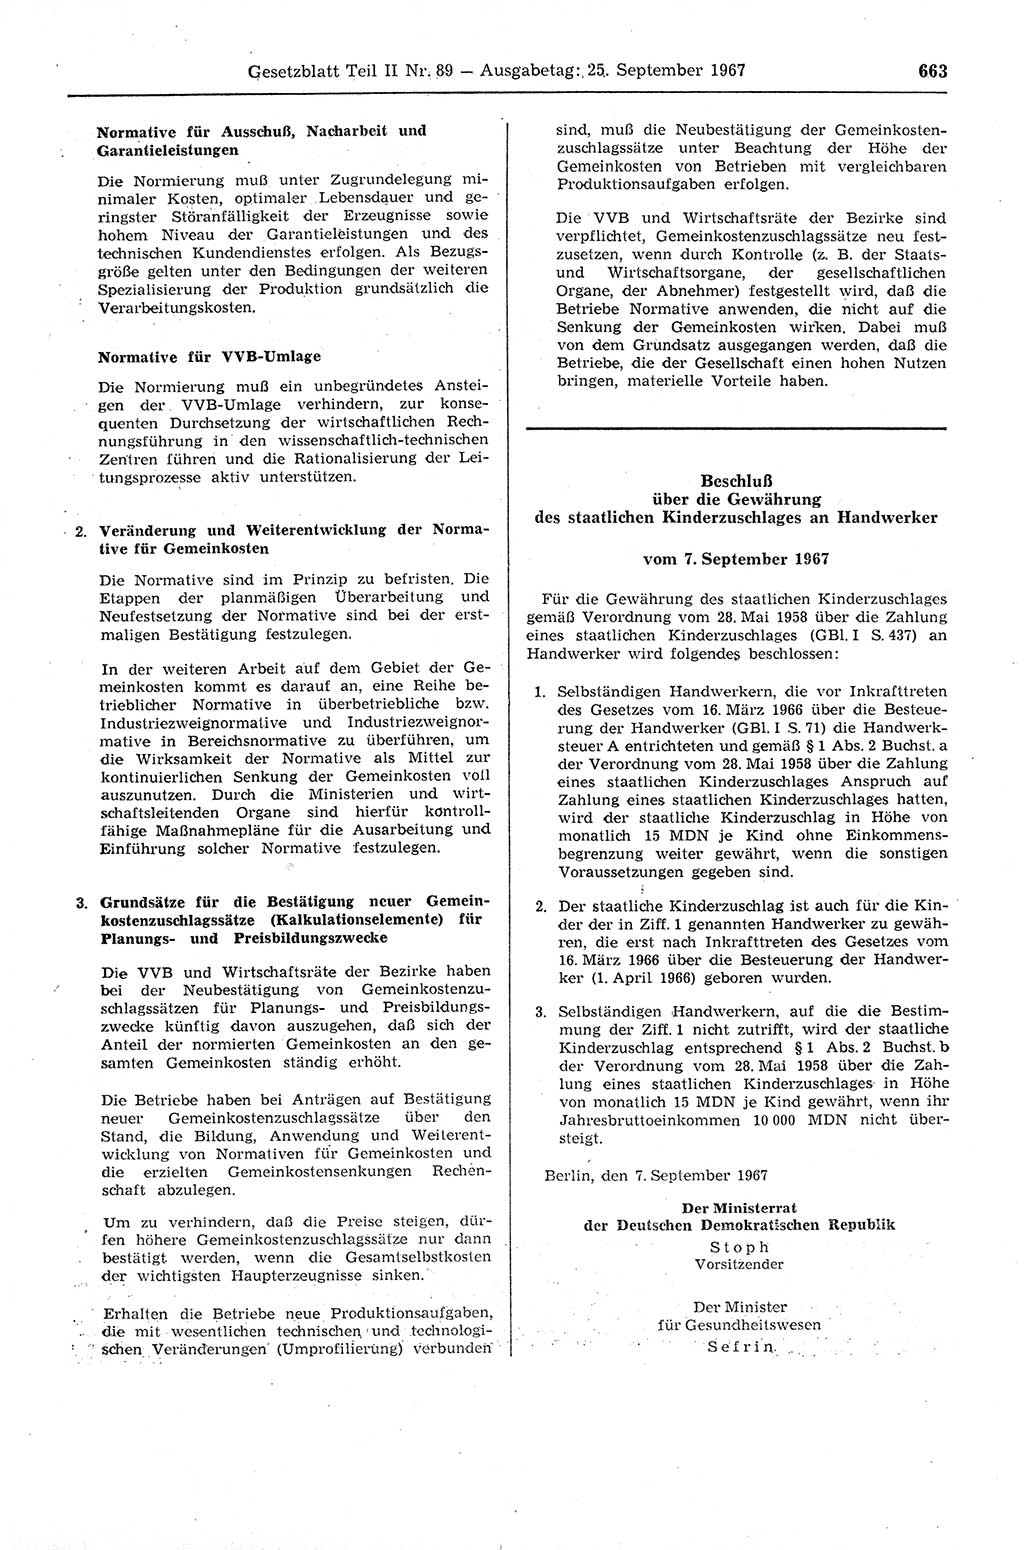 Gesetzblatt (GBl.) der Deutschen Demokratischen Republik (DDR) Teil ⅠⅠ 1967, Seite 663 (GBl. DDR ⅠⅠ 1967, S. 663)